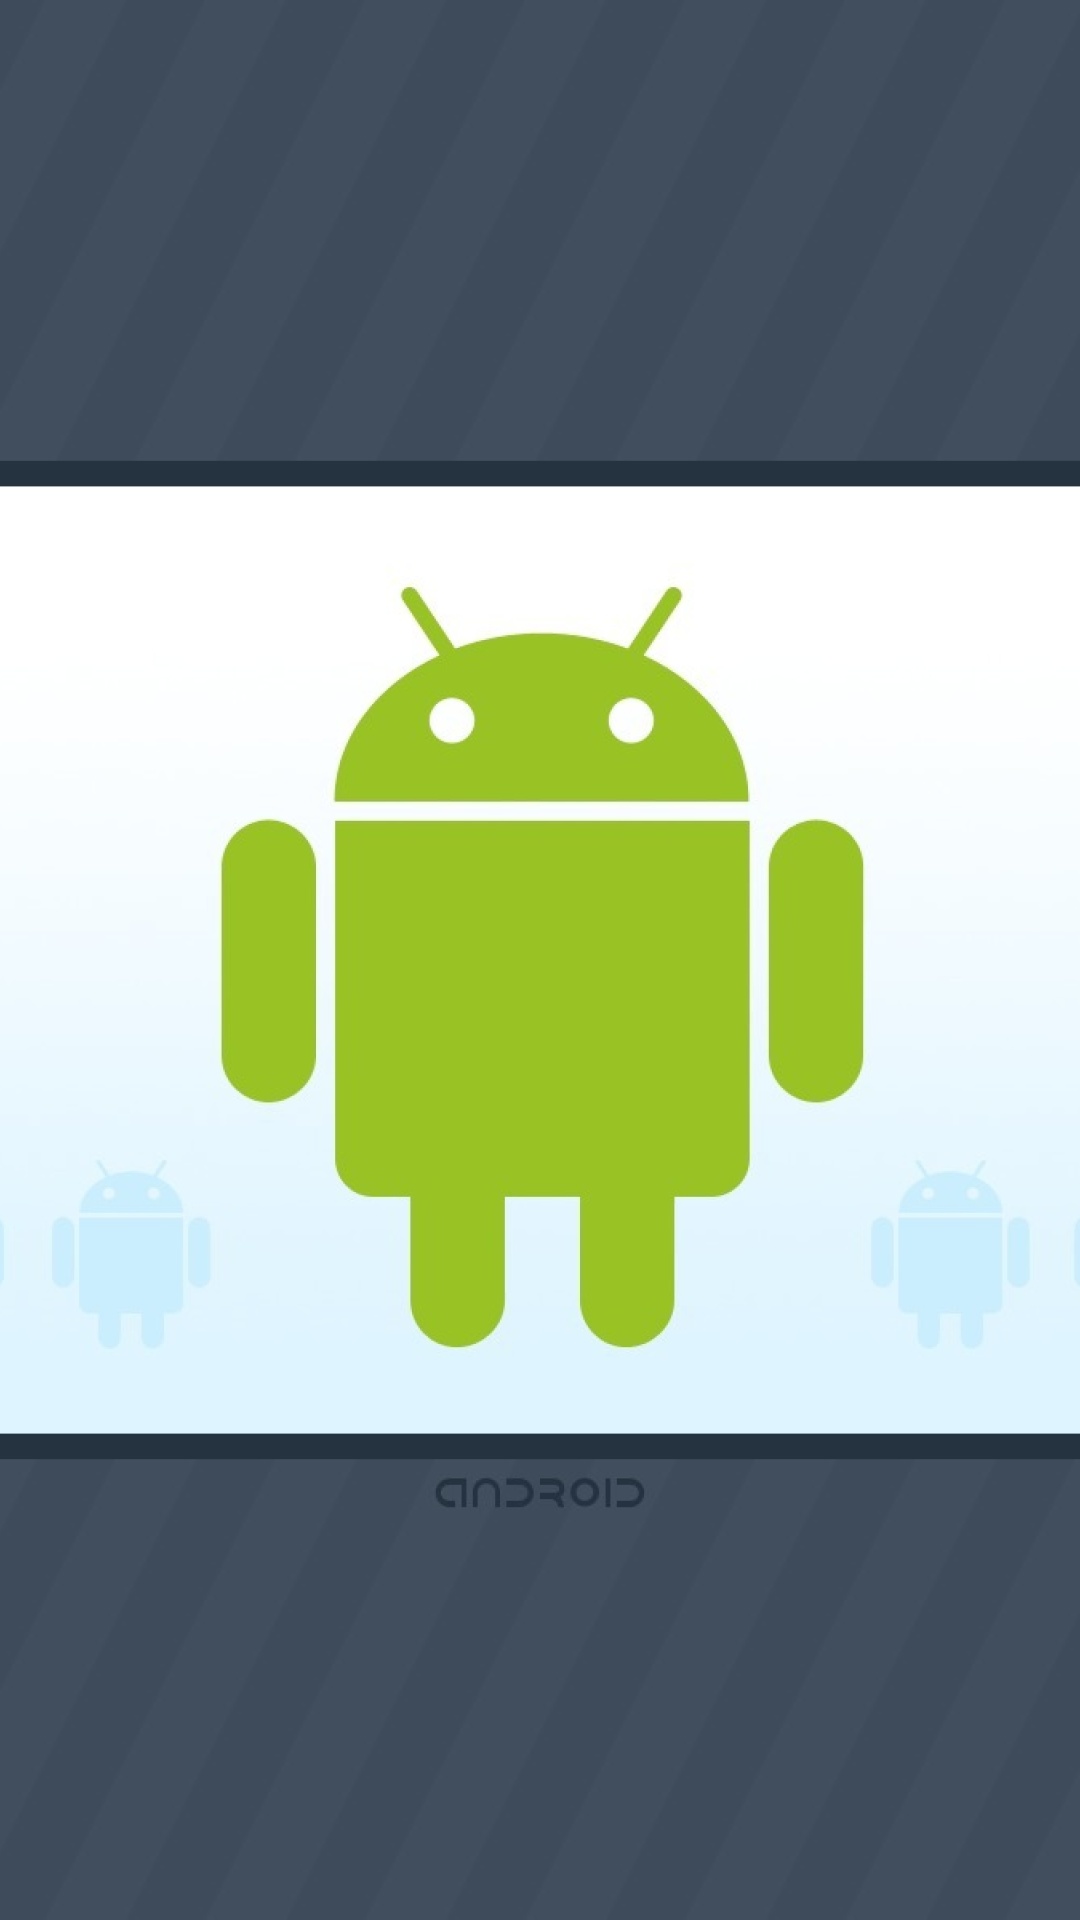 Обои Android Phone Logo 1080x1920